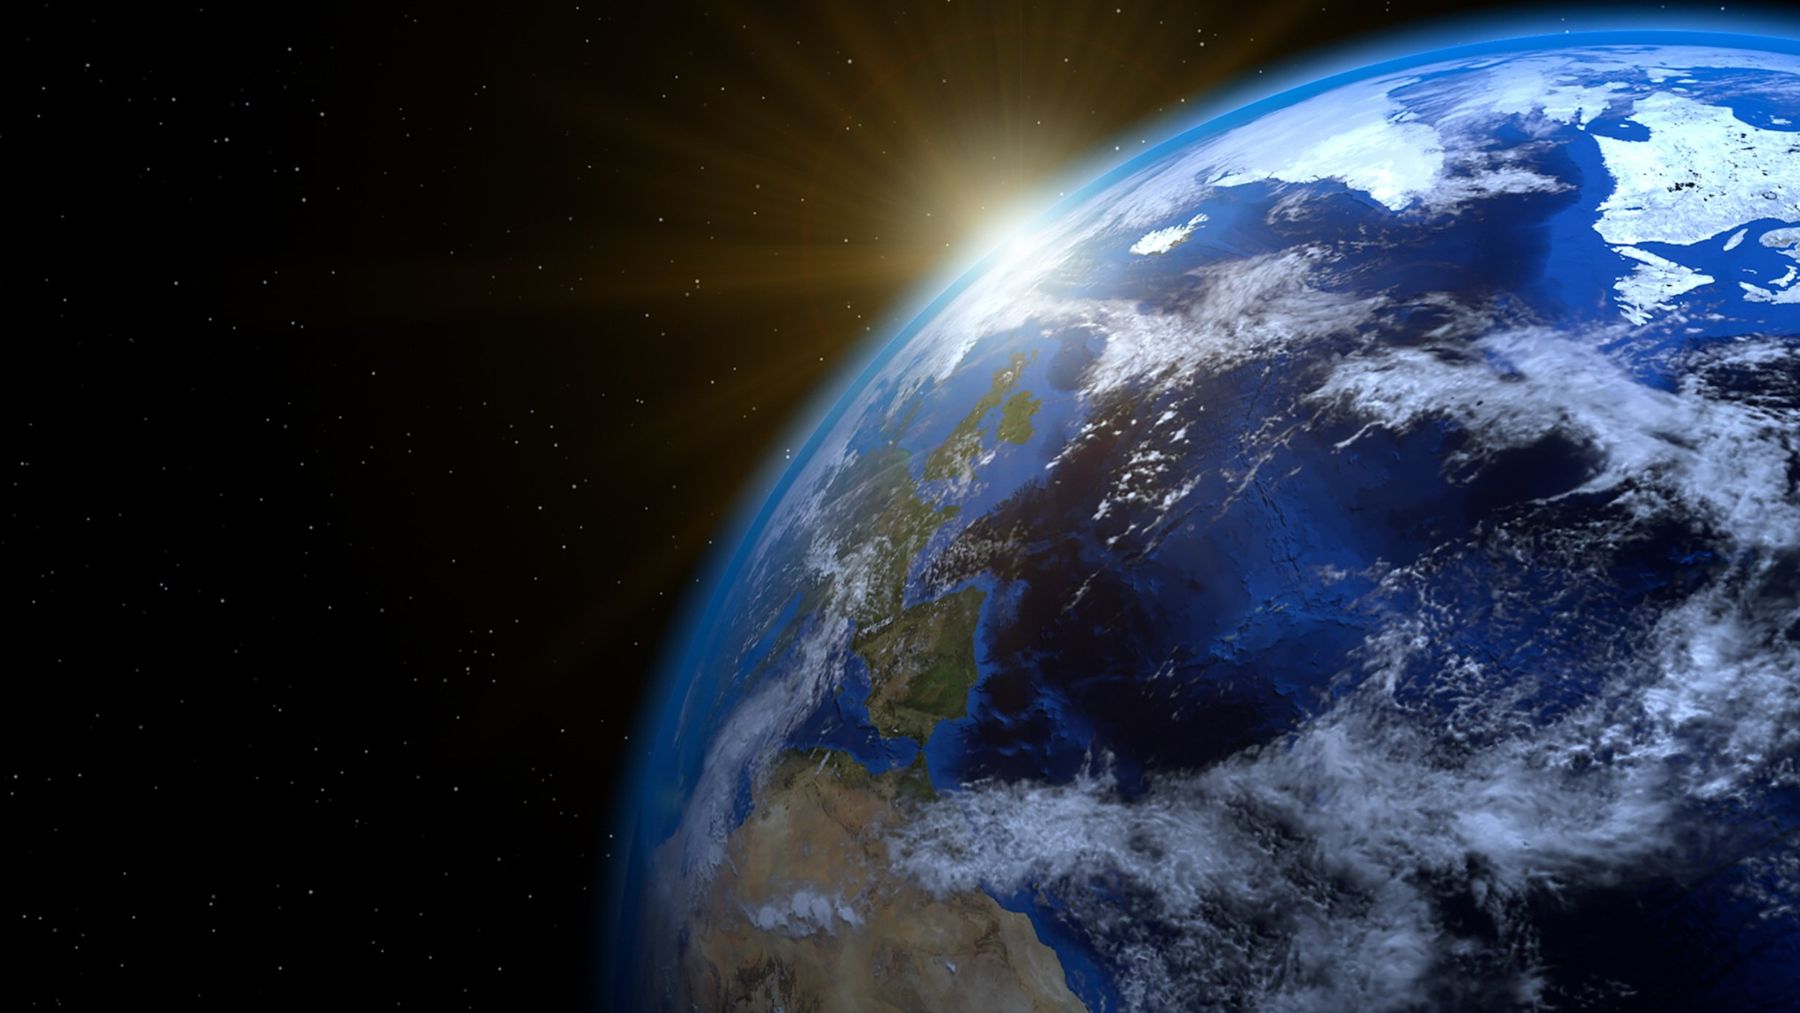 La Tierra a 6.000 millones de kilómetros es la dura revelación de la NASA en su foto más escalofriante